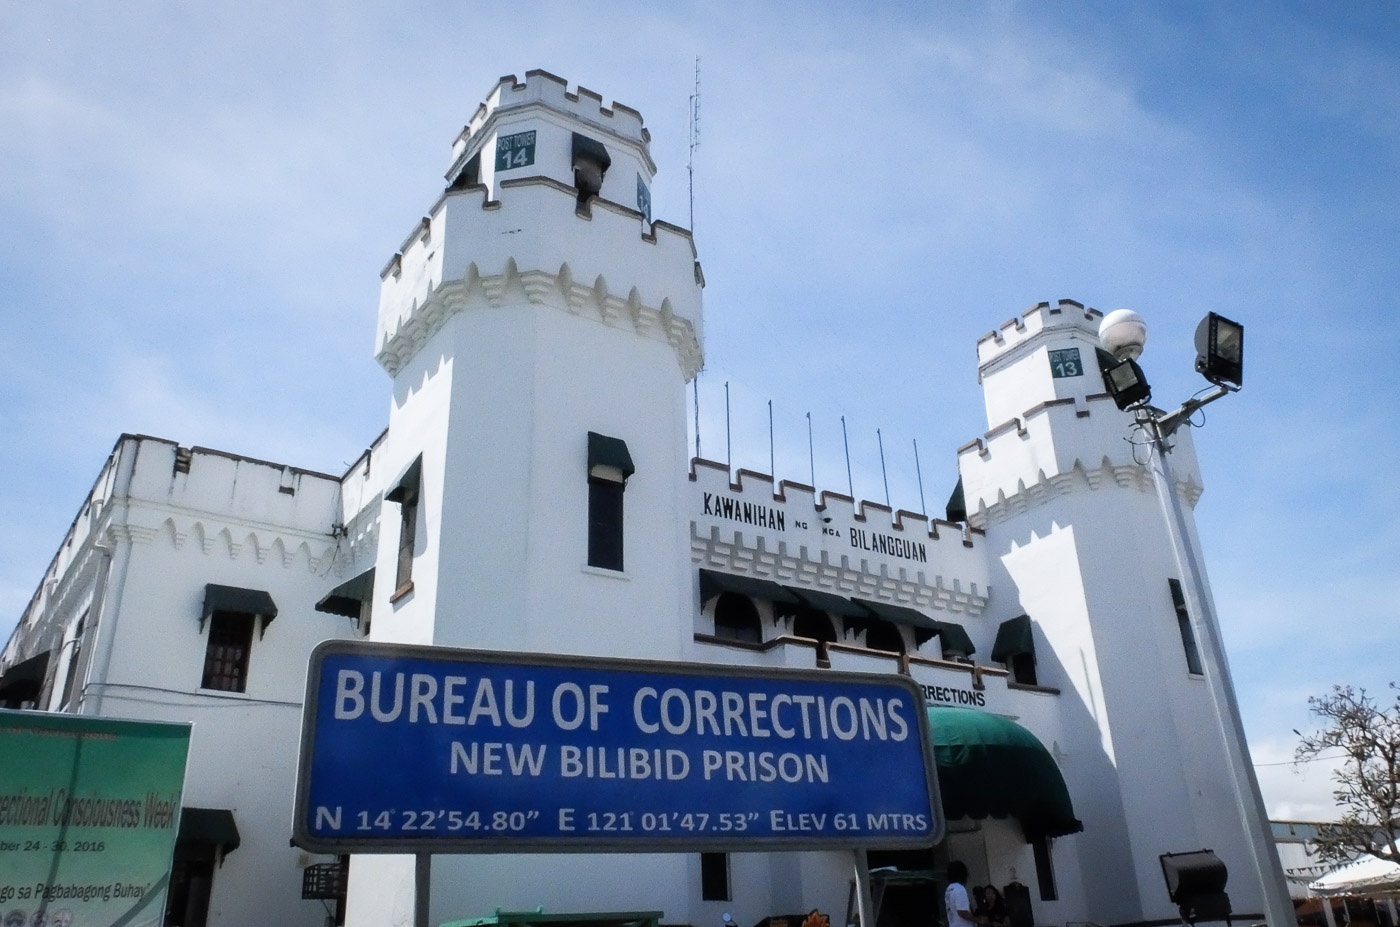 菲律宾新比利彼得监狱一名囚犯确诊感染新冠病毒